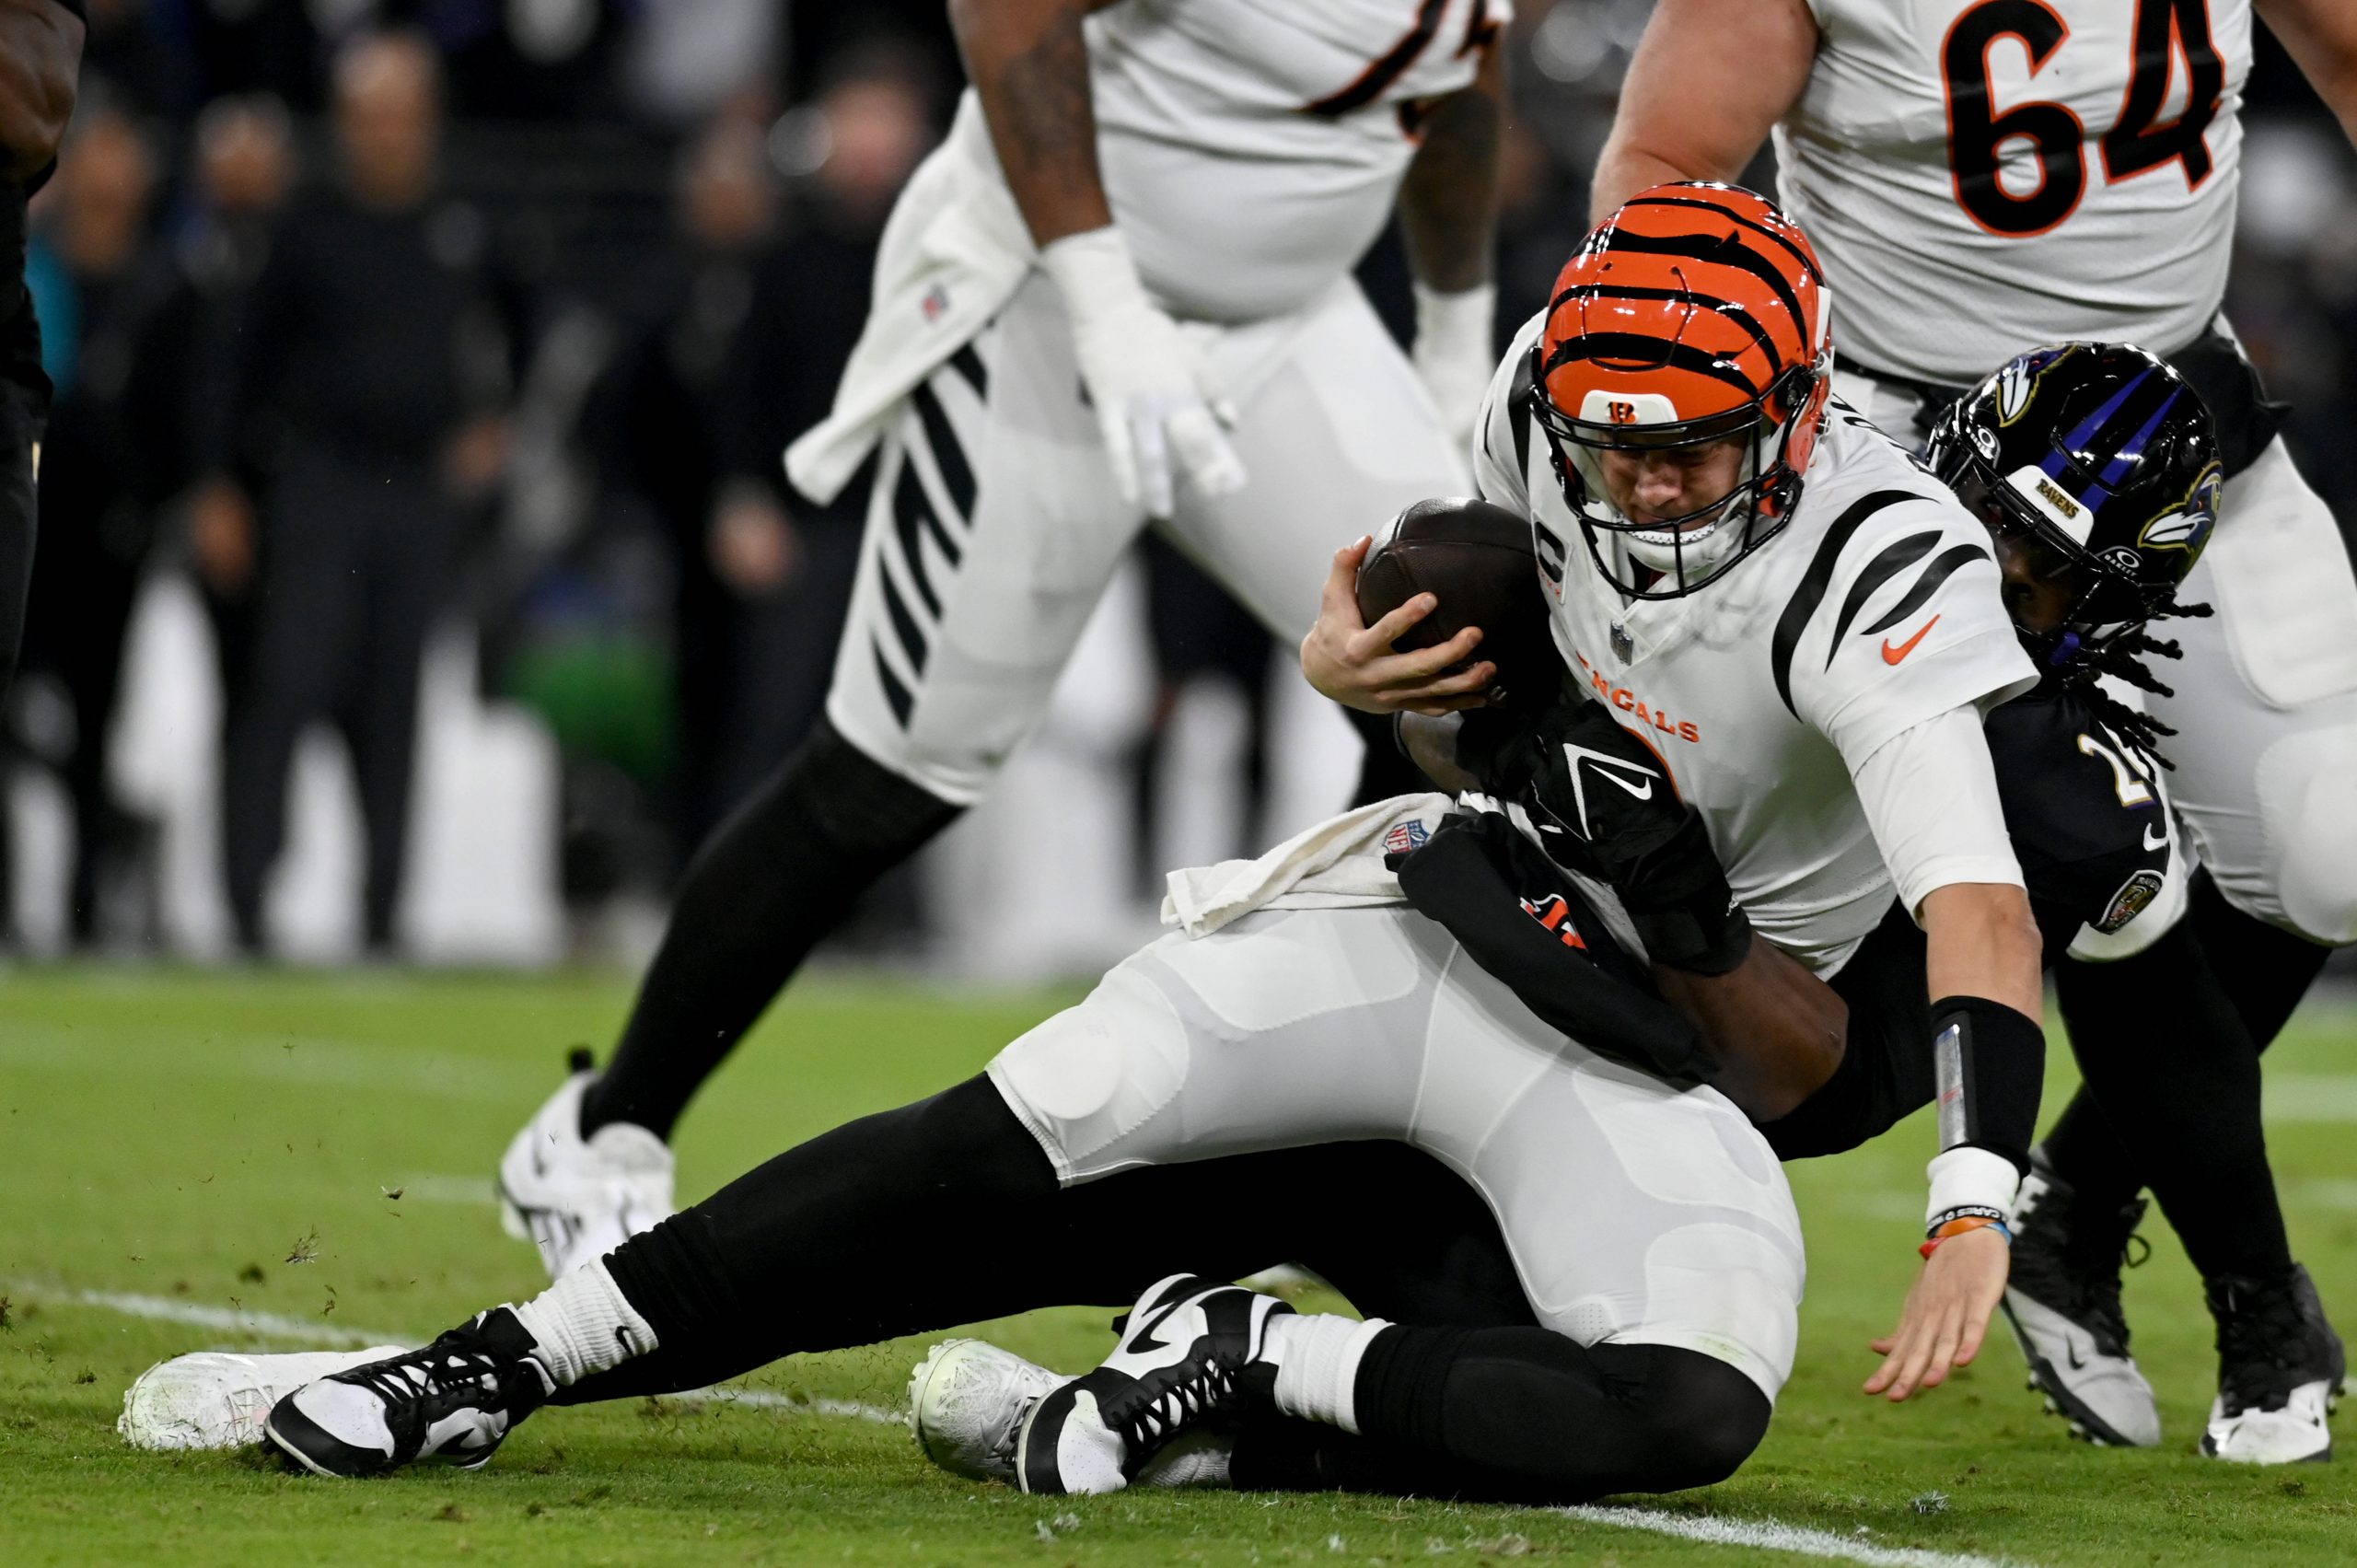 FootballR - NFL - Die Cincinnati Bengals spielen gegen die Baltimore Ravens. Ungereimtheiten rund um Joe Burrow Verletzung.